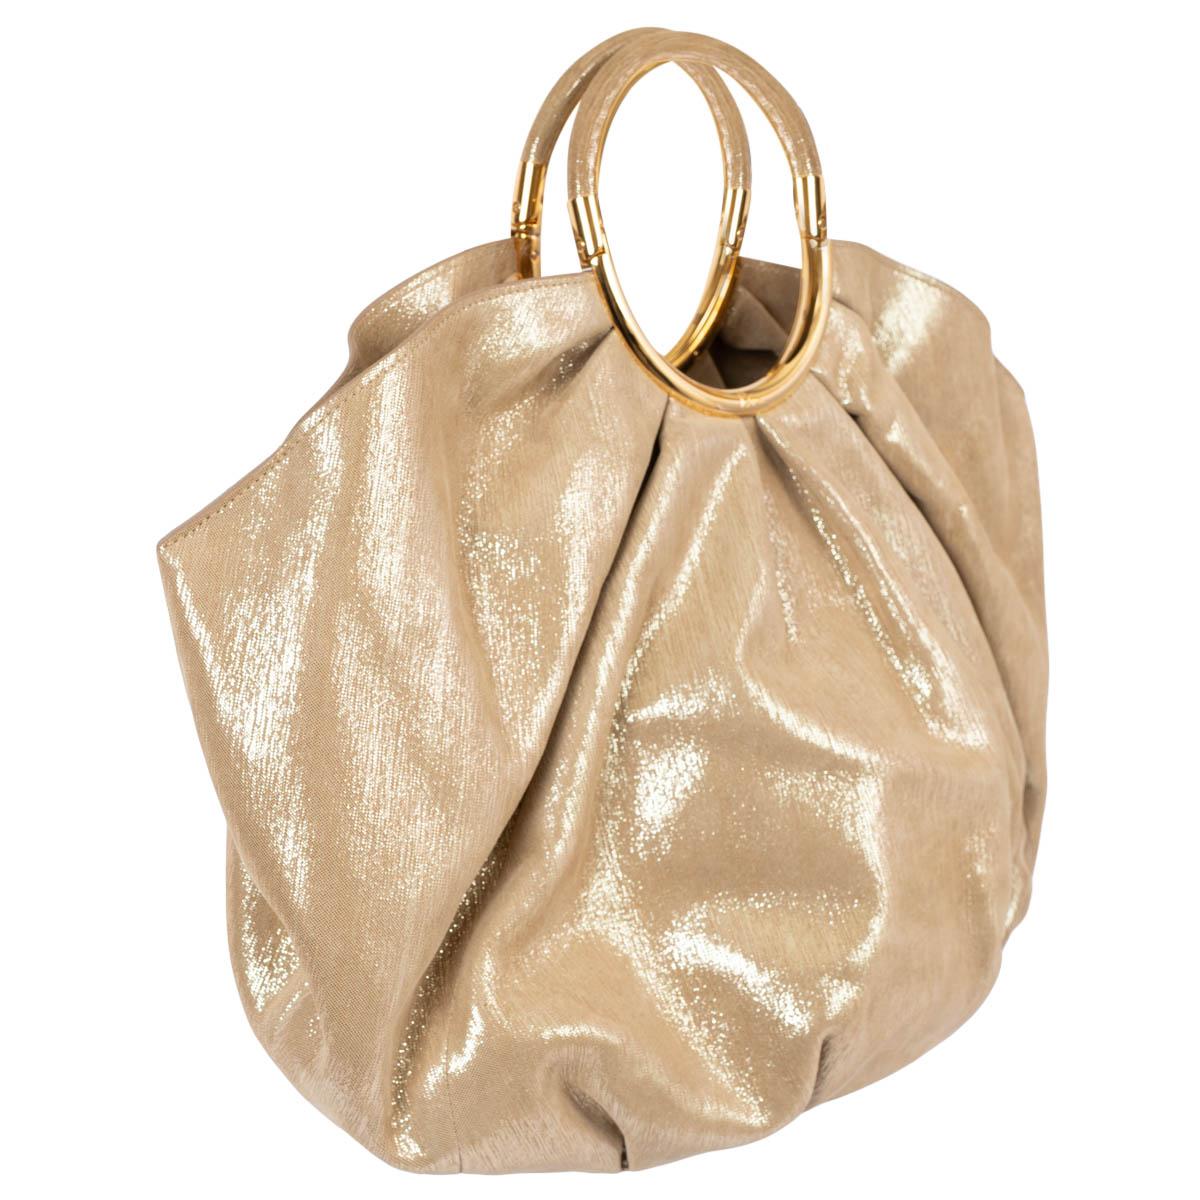 100% authentique Christian Dior soft Babe sac à main hobo en cuir beige doré brillant avec des ferrures dorées. Le modèle présente des fronces et des poignées circulaires gravées d'un logo. Doublé de nylon écru. Livré avec une pochette cosmétique